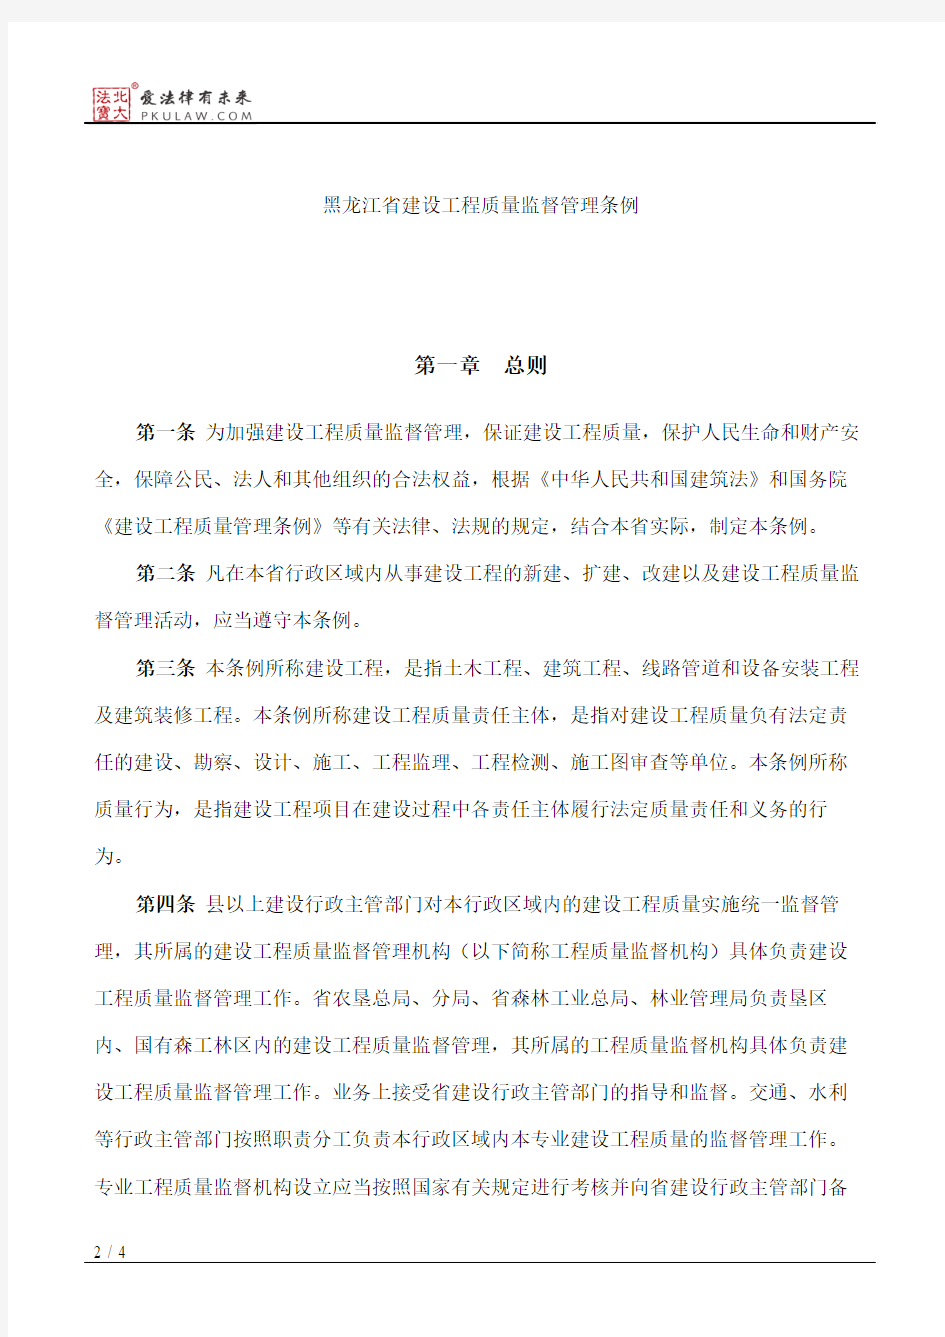 黑龙江省建设工程质量监督管理条例